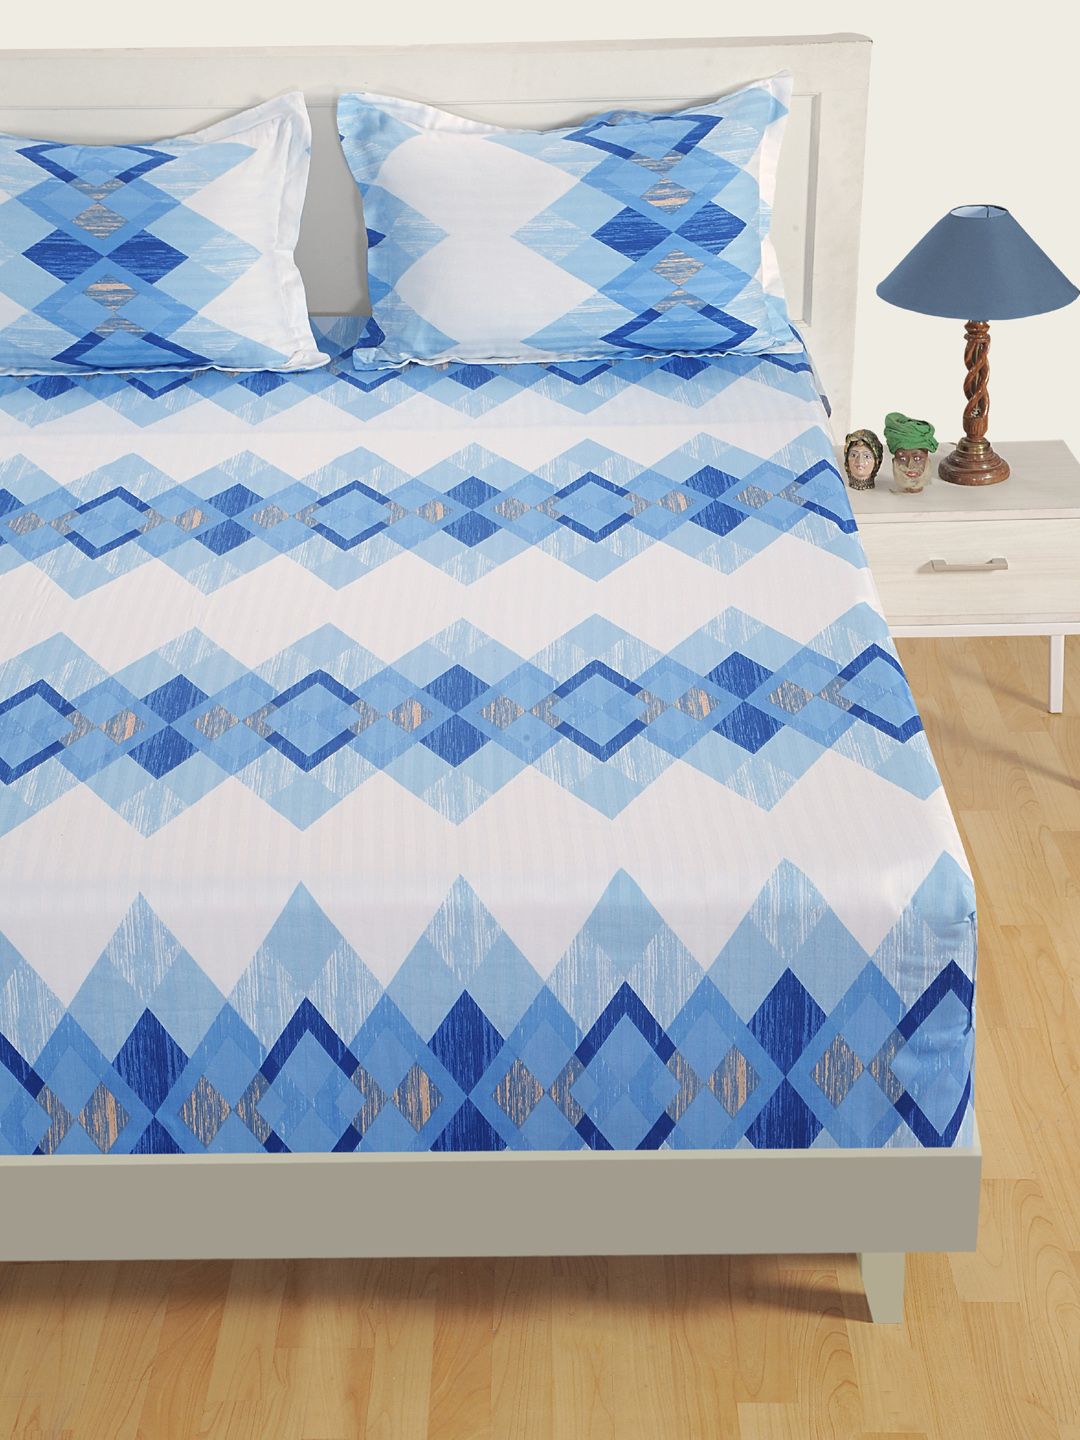 Swayam White & Blue Satin 250 TC Printed Bedding Set Price in India